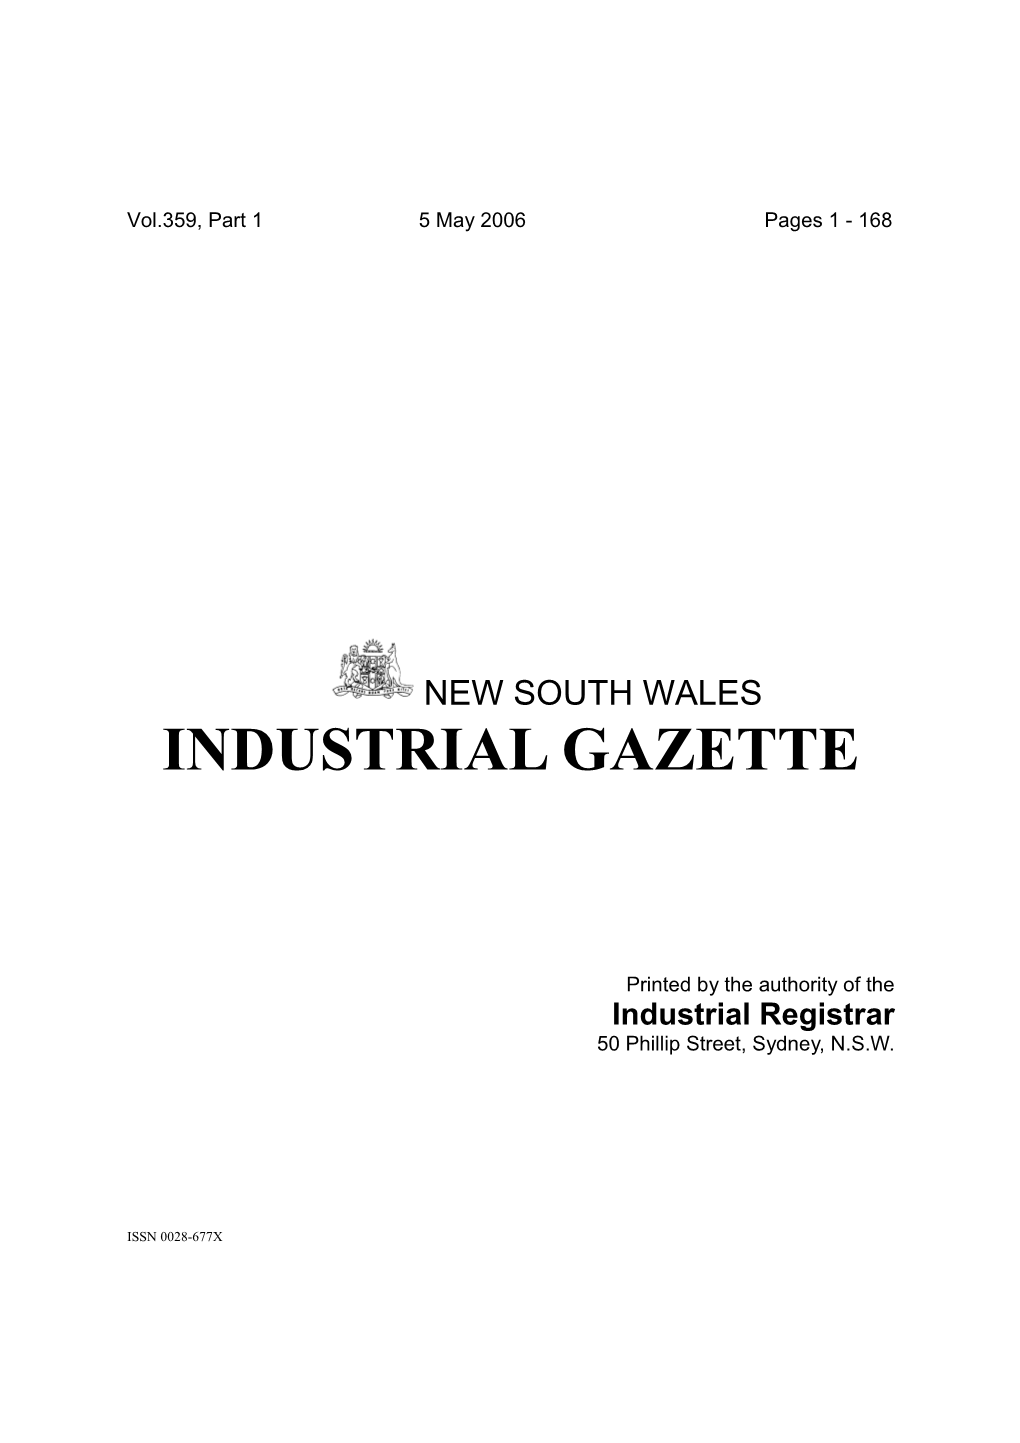 Industrial Gazette